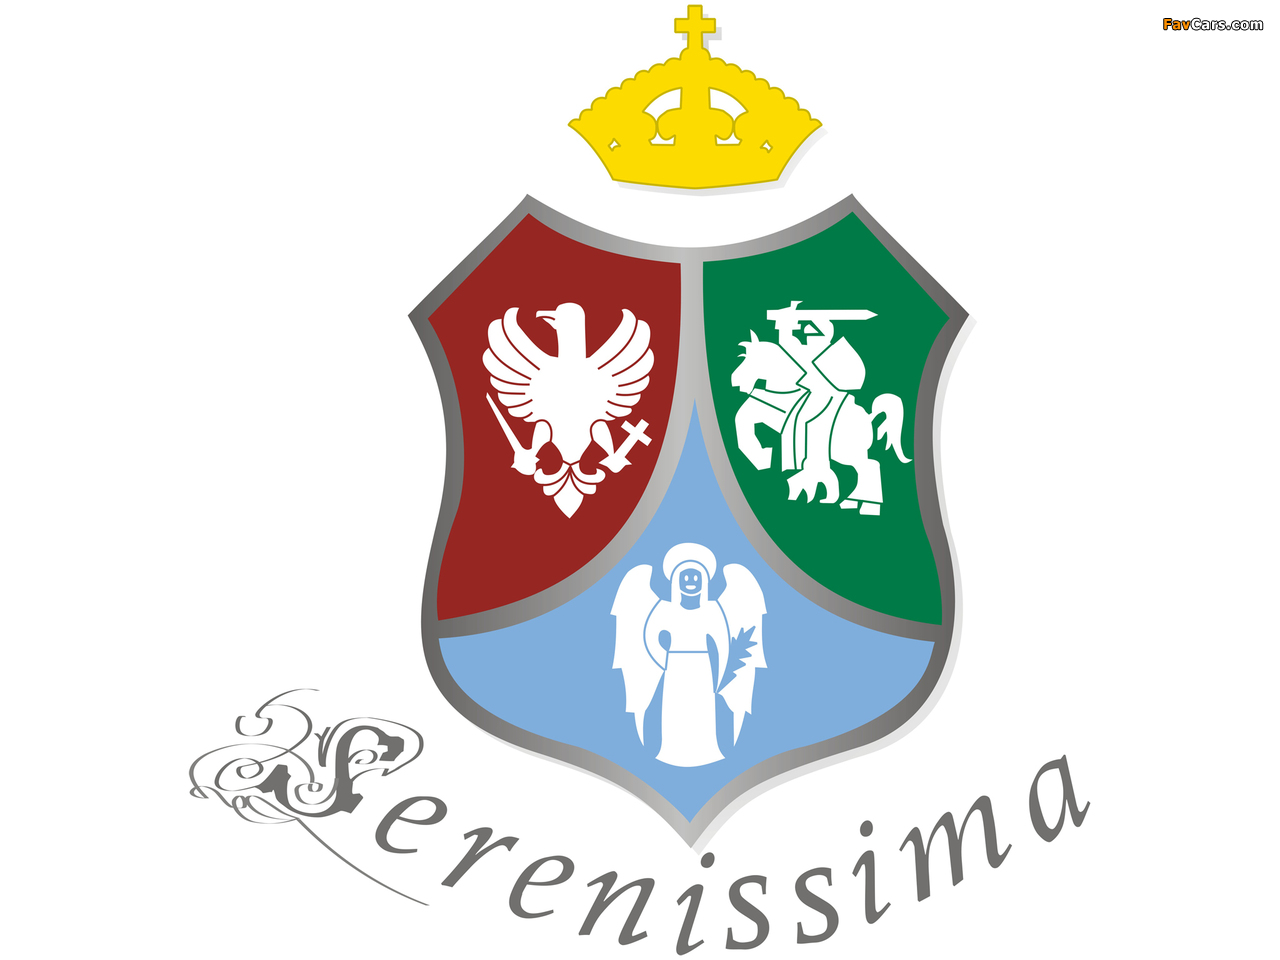 Serenissima images (1280 x 960)